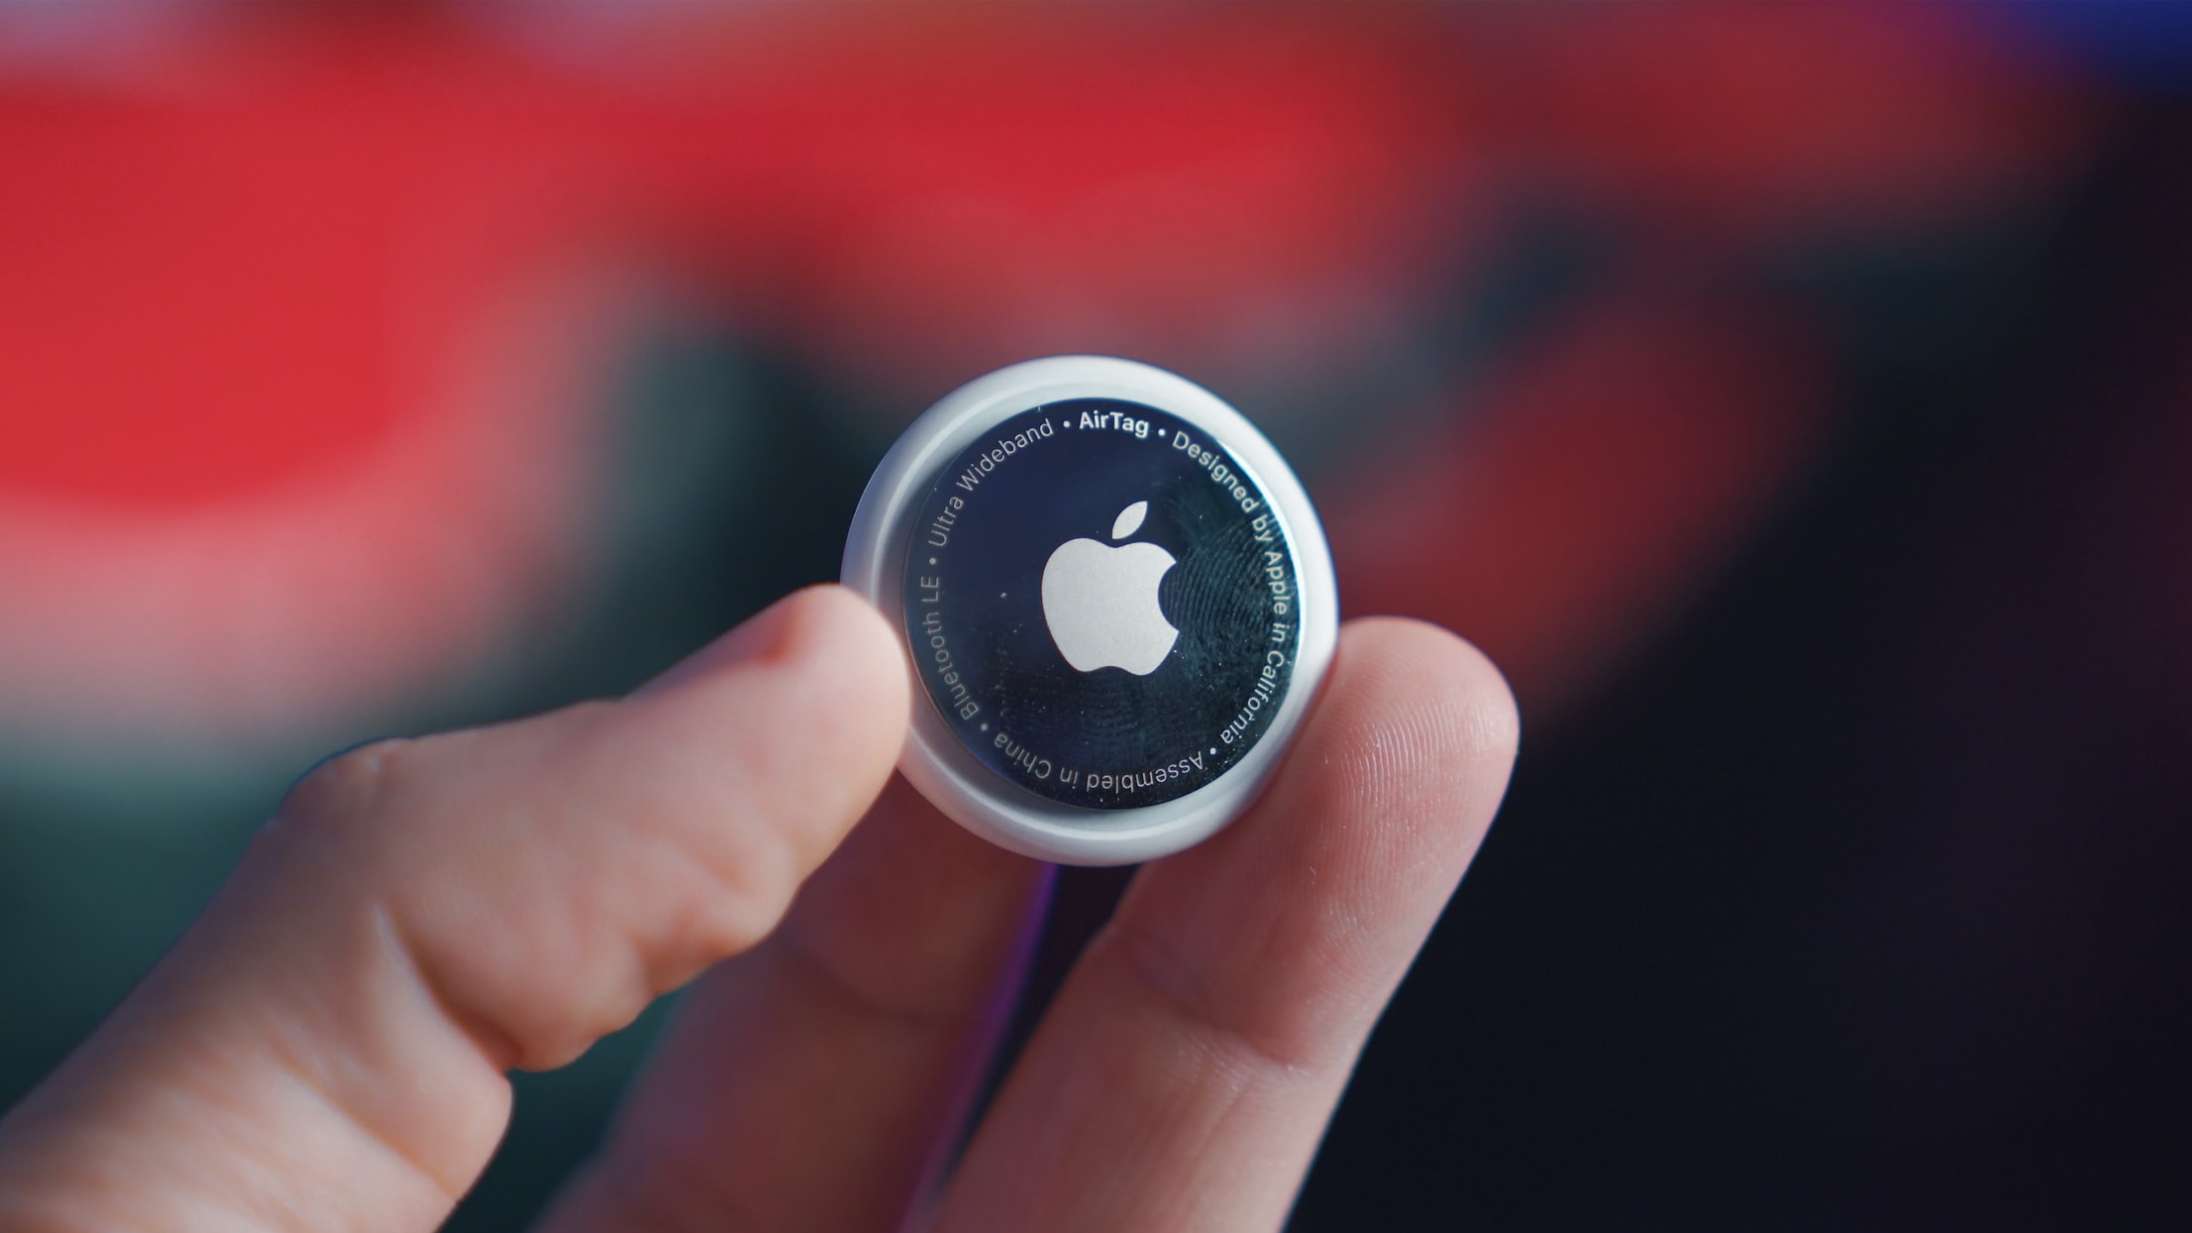 Nu bliver det snart nemmere for dig at opdage, hvis nogen stalker dig med Apples lille tracker